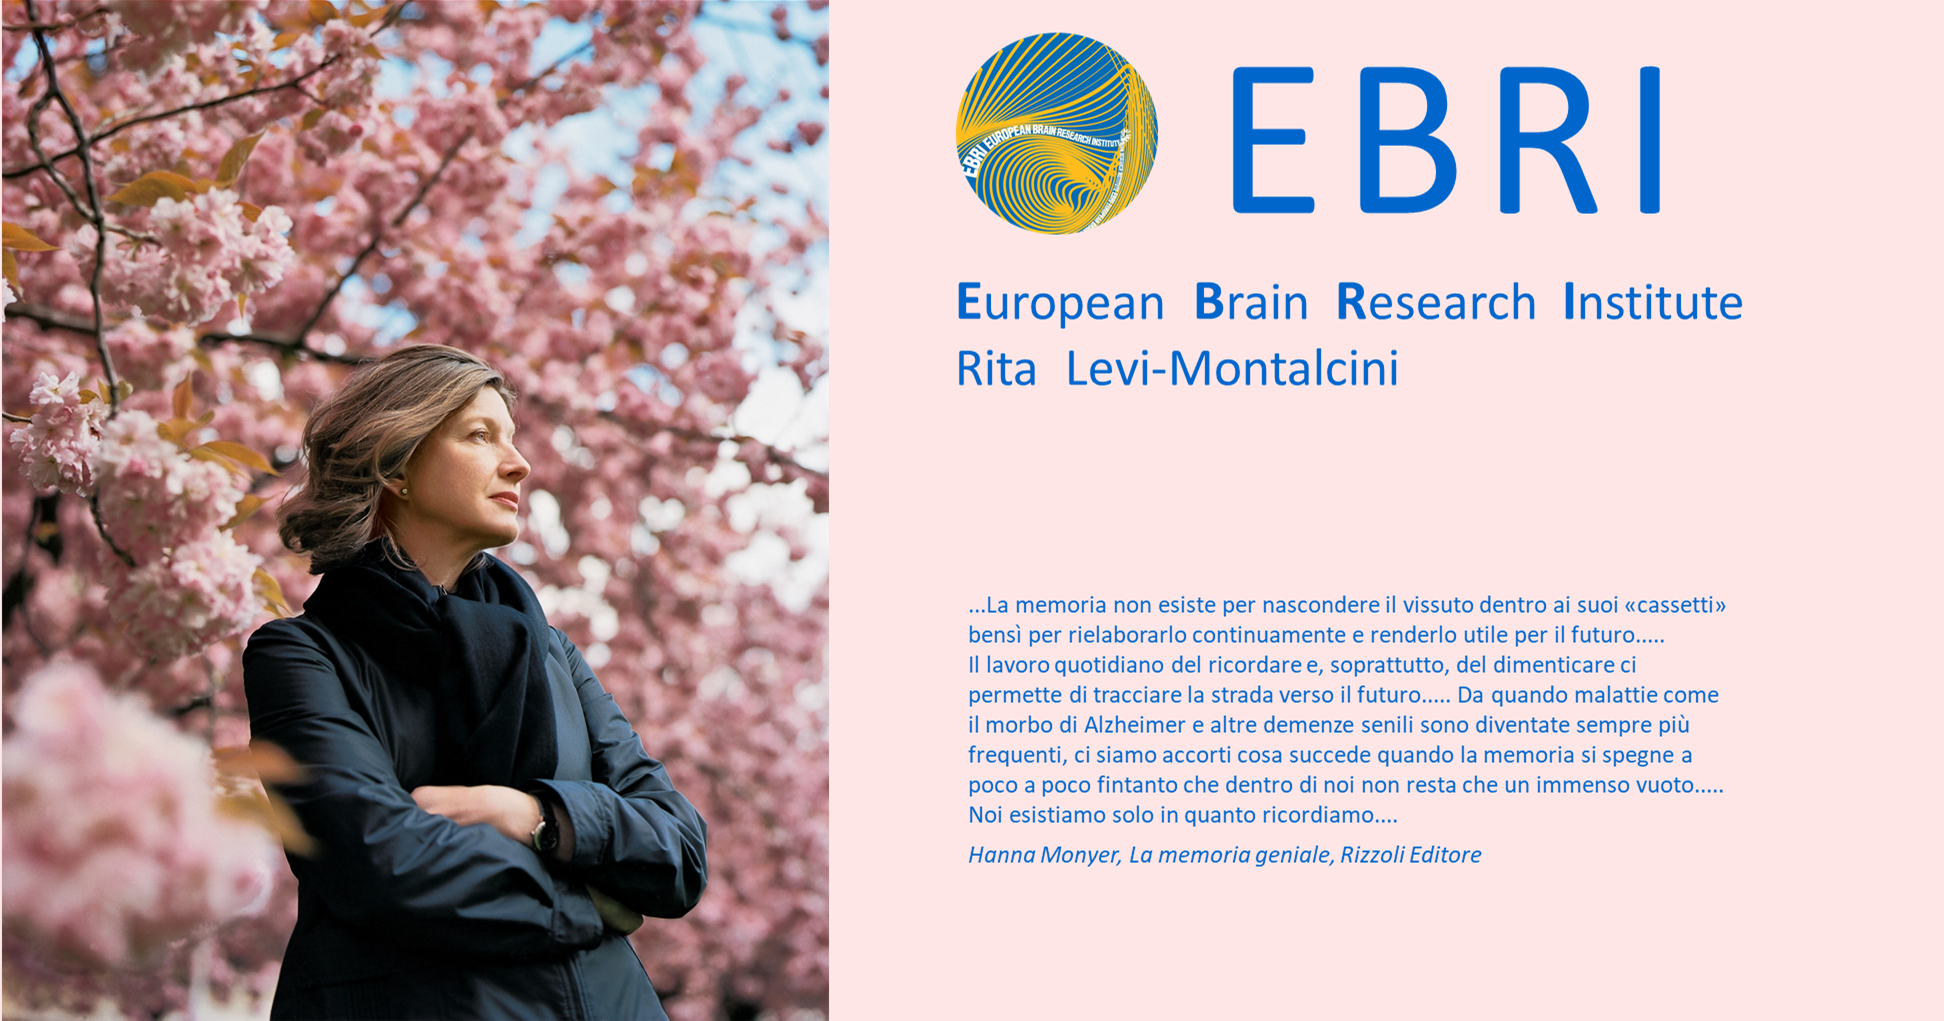 La memoria spaziale nell'Alzheimer -EBRI - Rita Levi-Montalcini